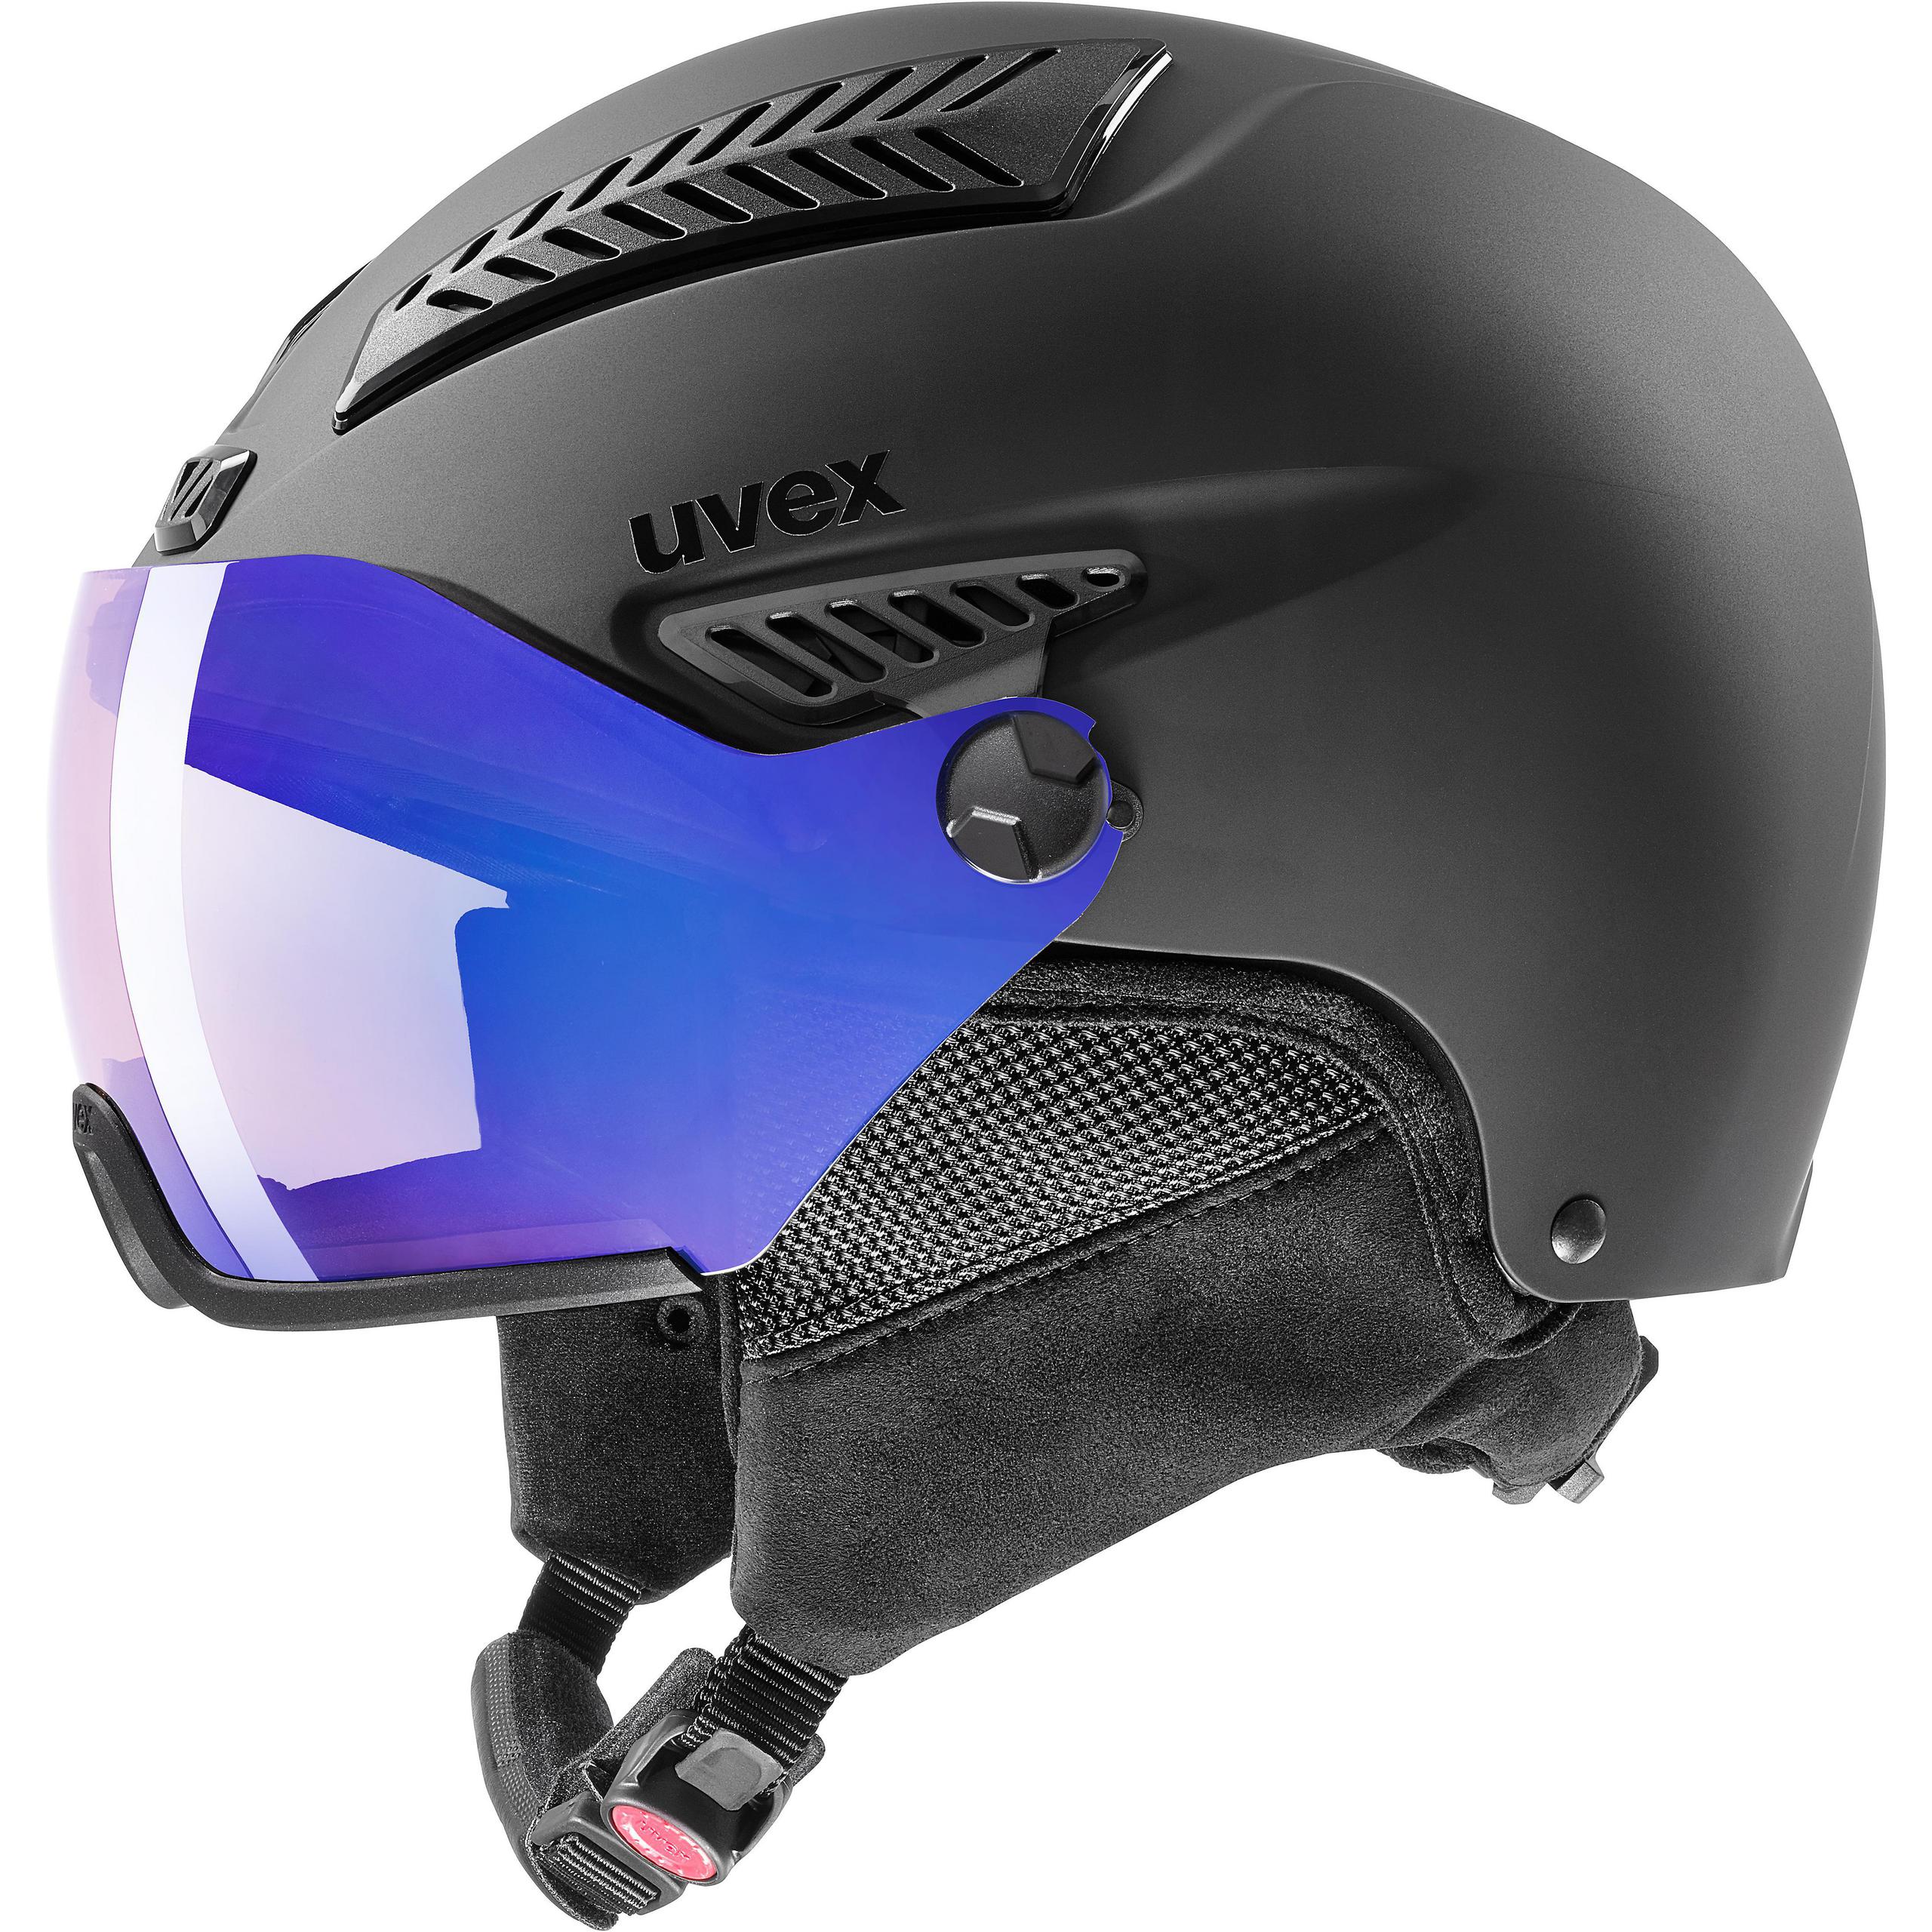 Uvex hlmt 600 visor black mat Skihelm Snowboardhelm großes Sichtfeld schwarz 